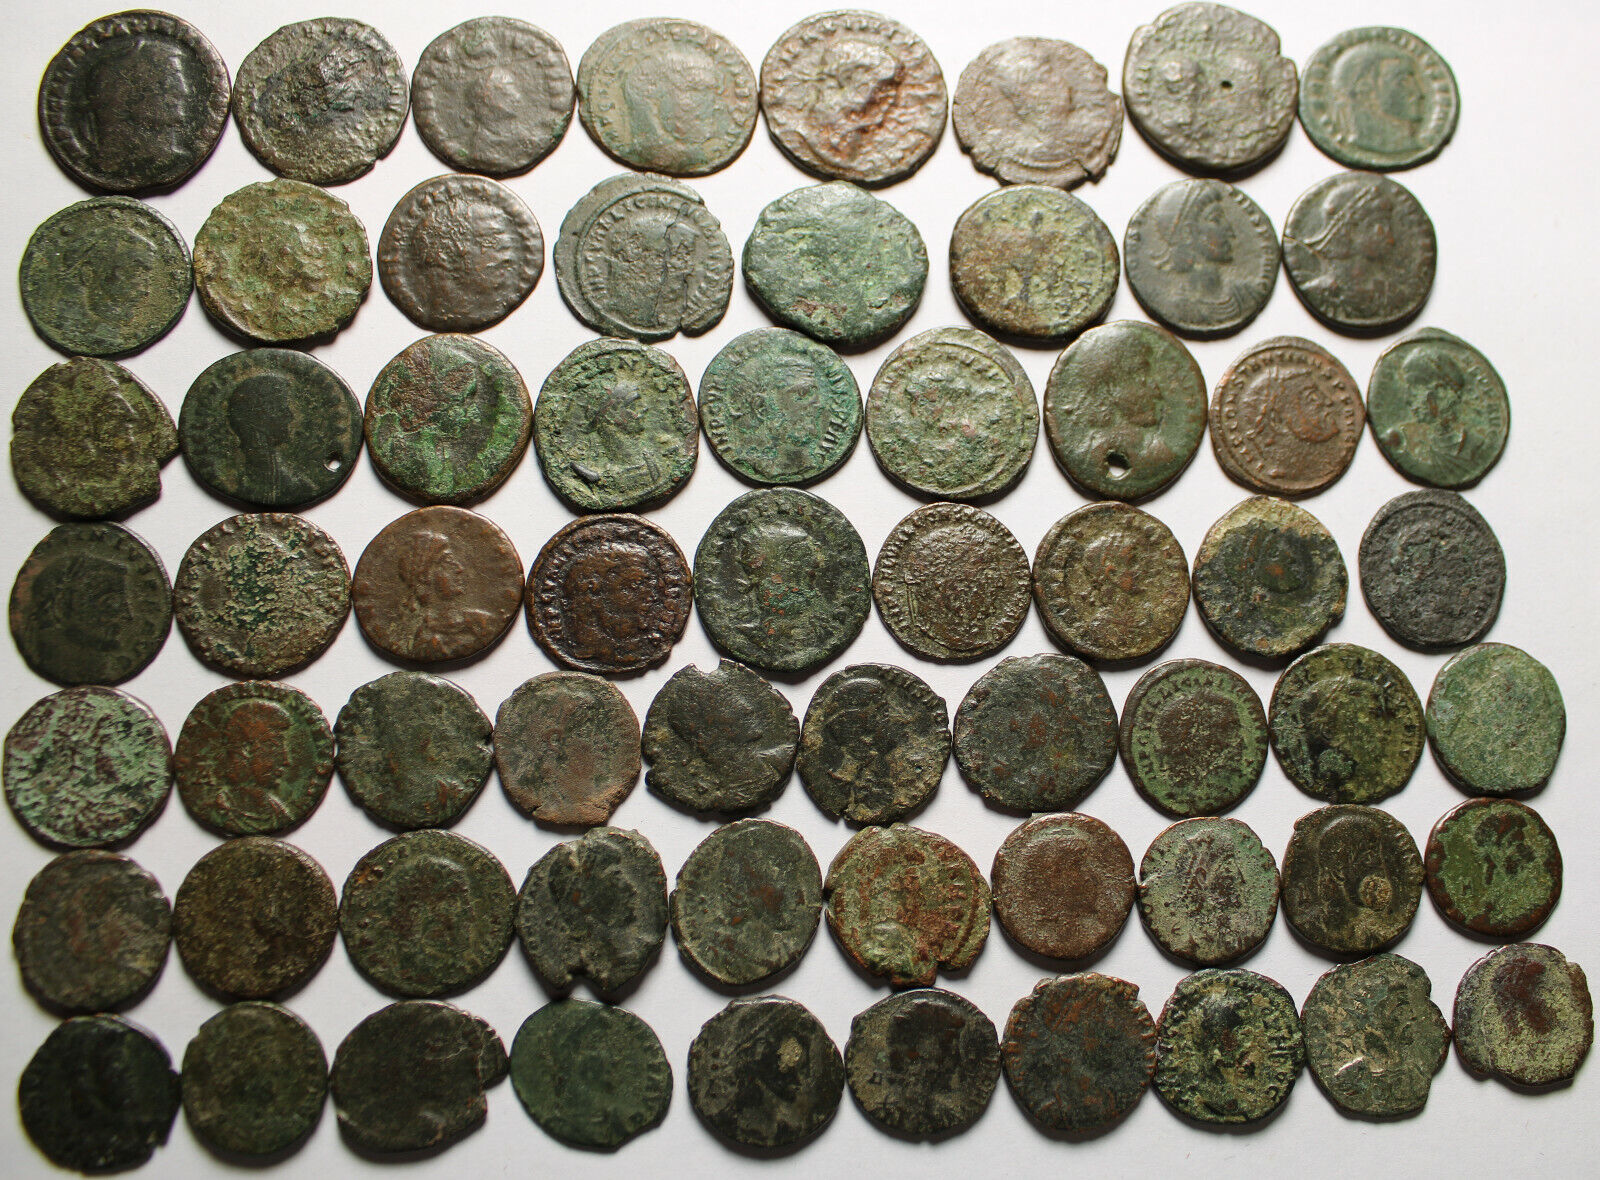 Lot of 3 large coins Rare original Ancient Roman Constantius Licinius Maximianus Без бренда